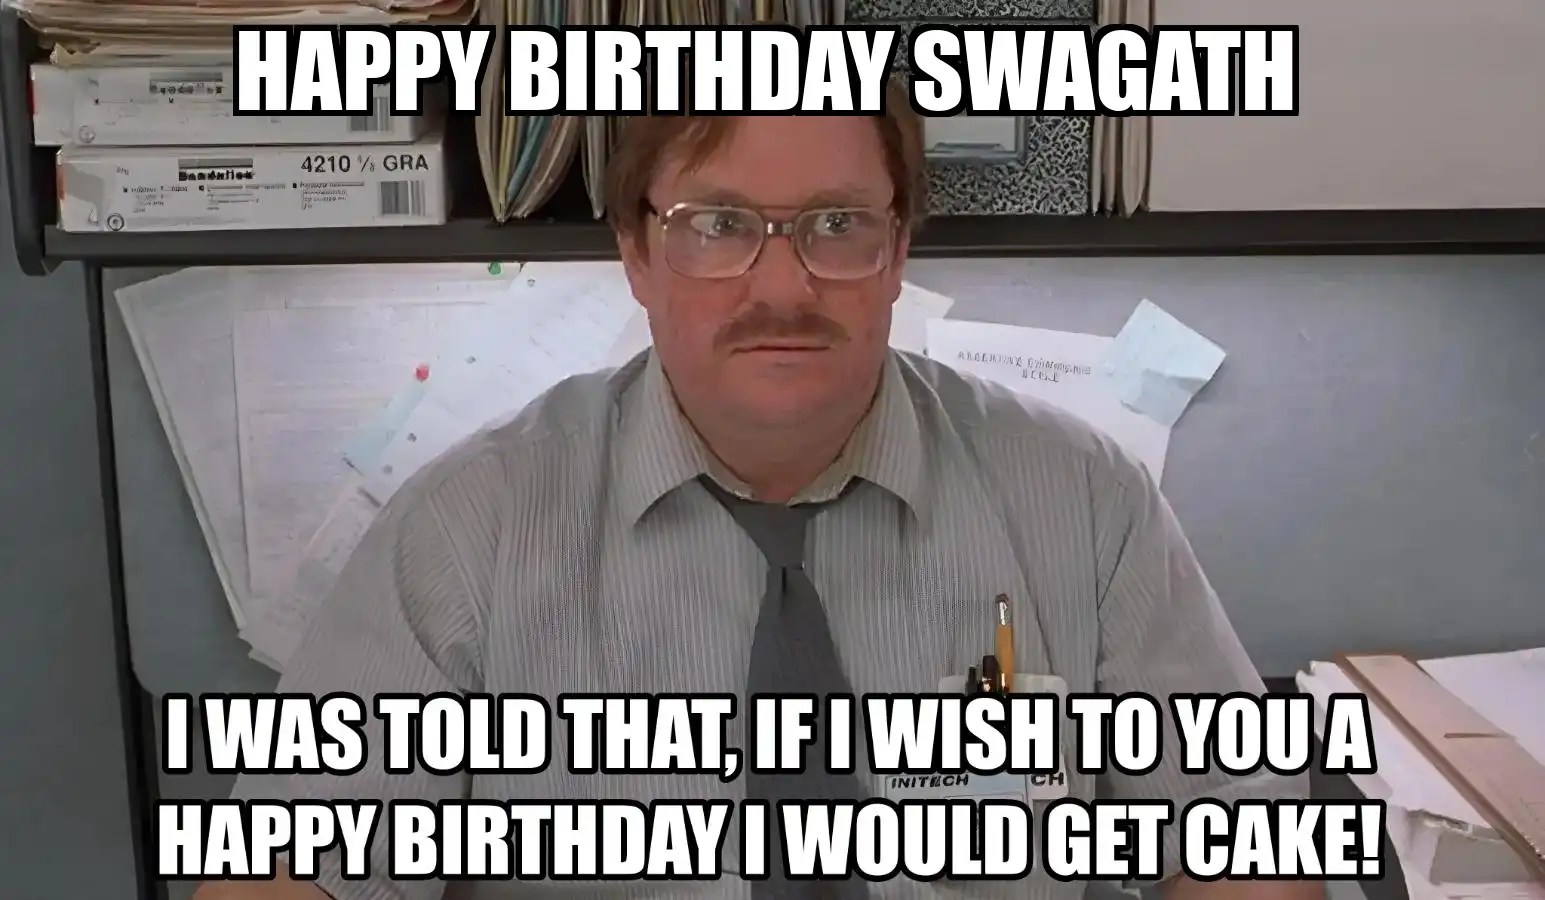 Happy Birthday Swagath I Would Get A Cake Meme